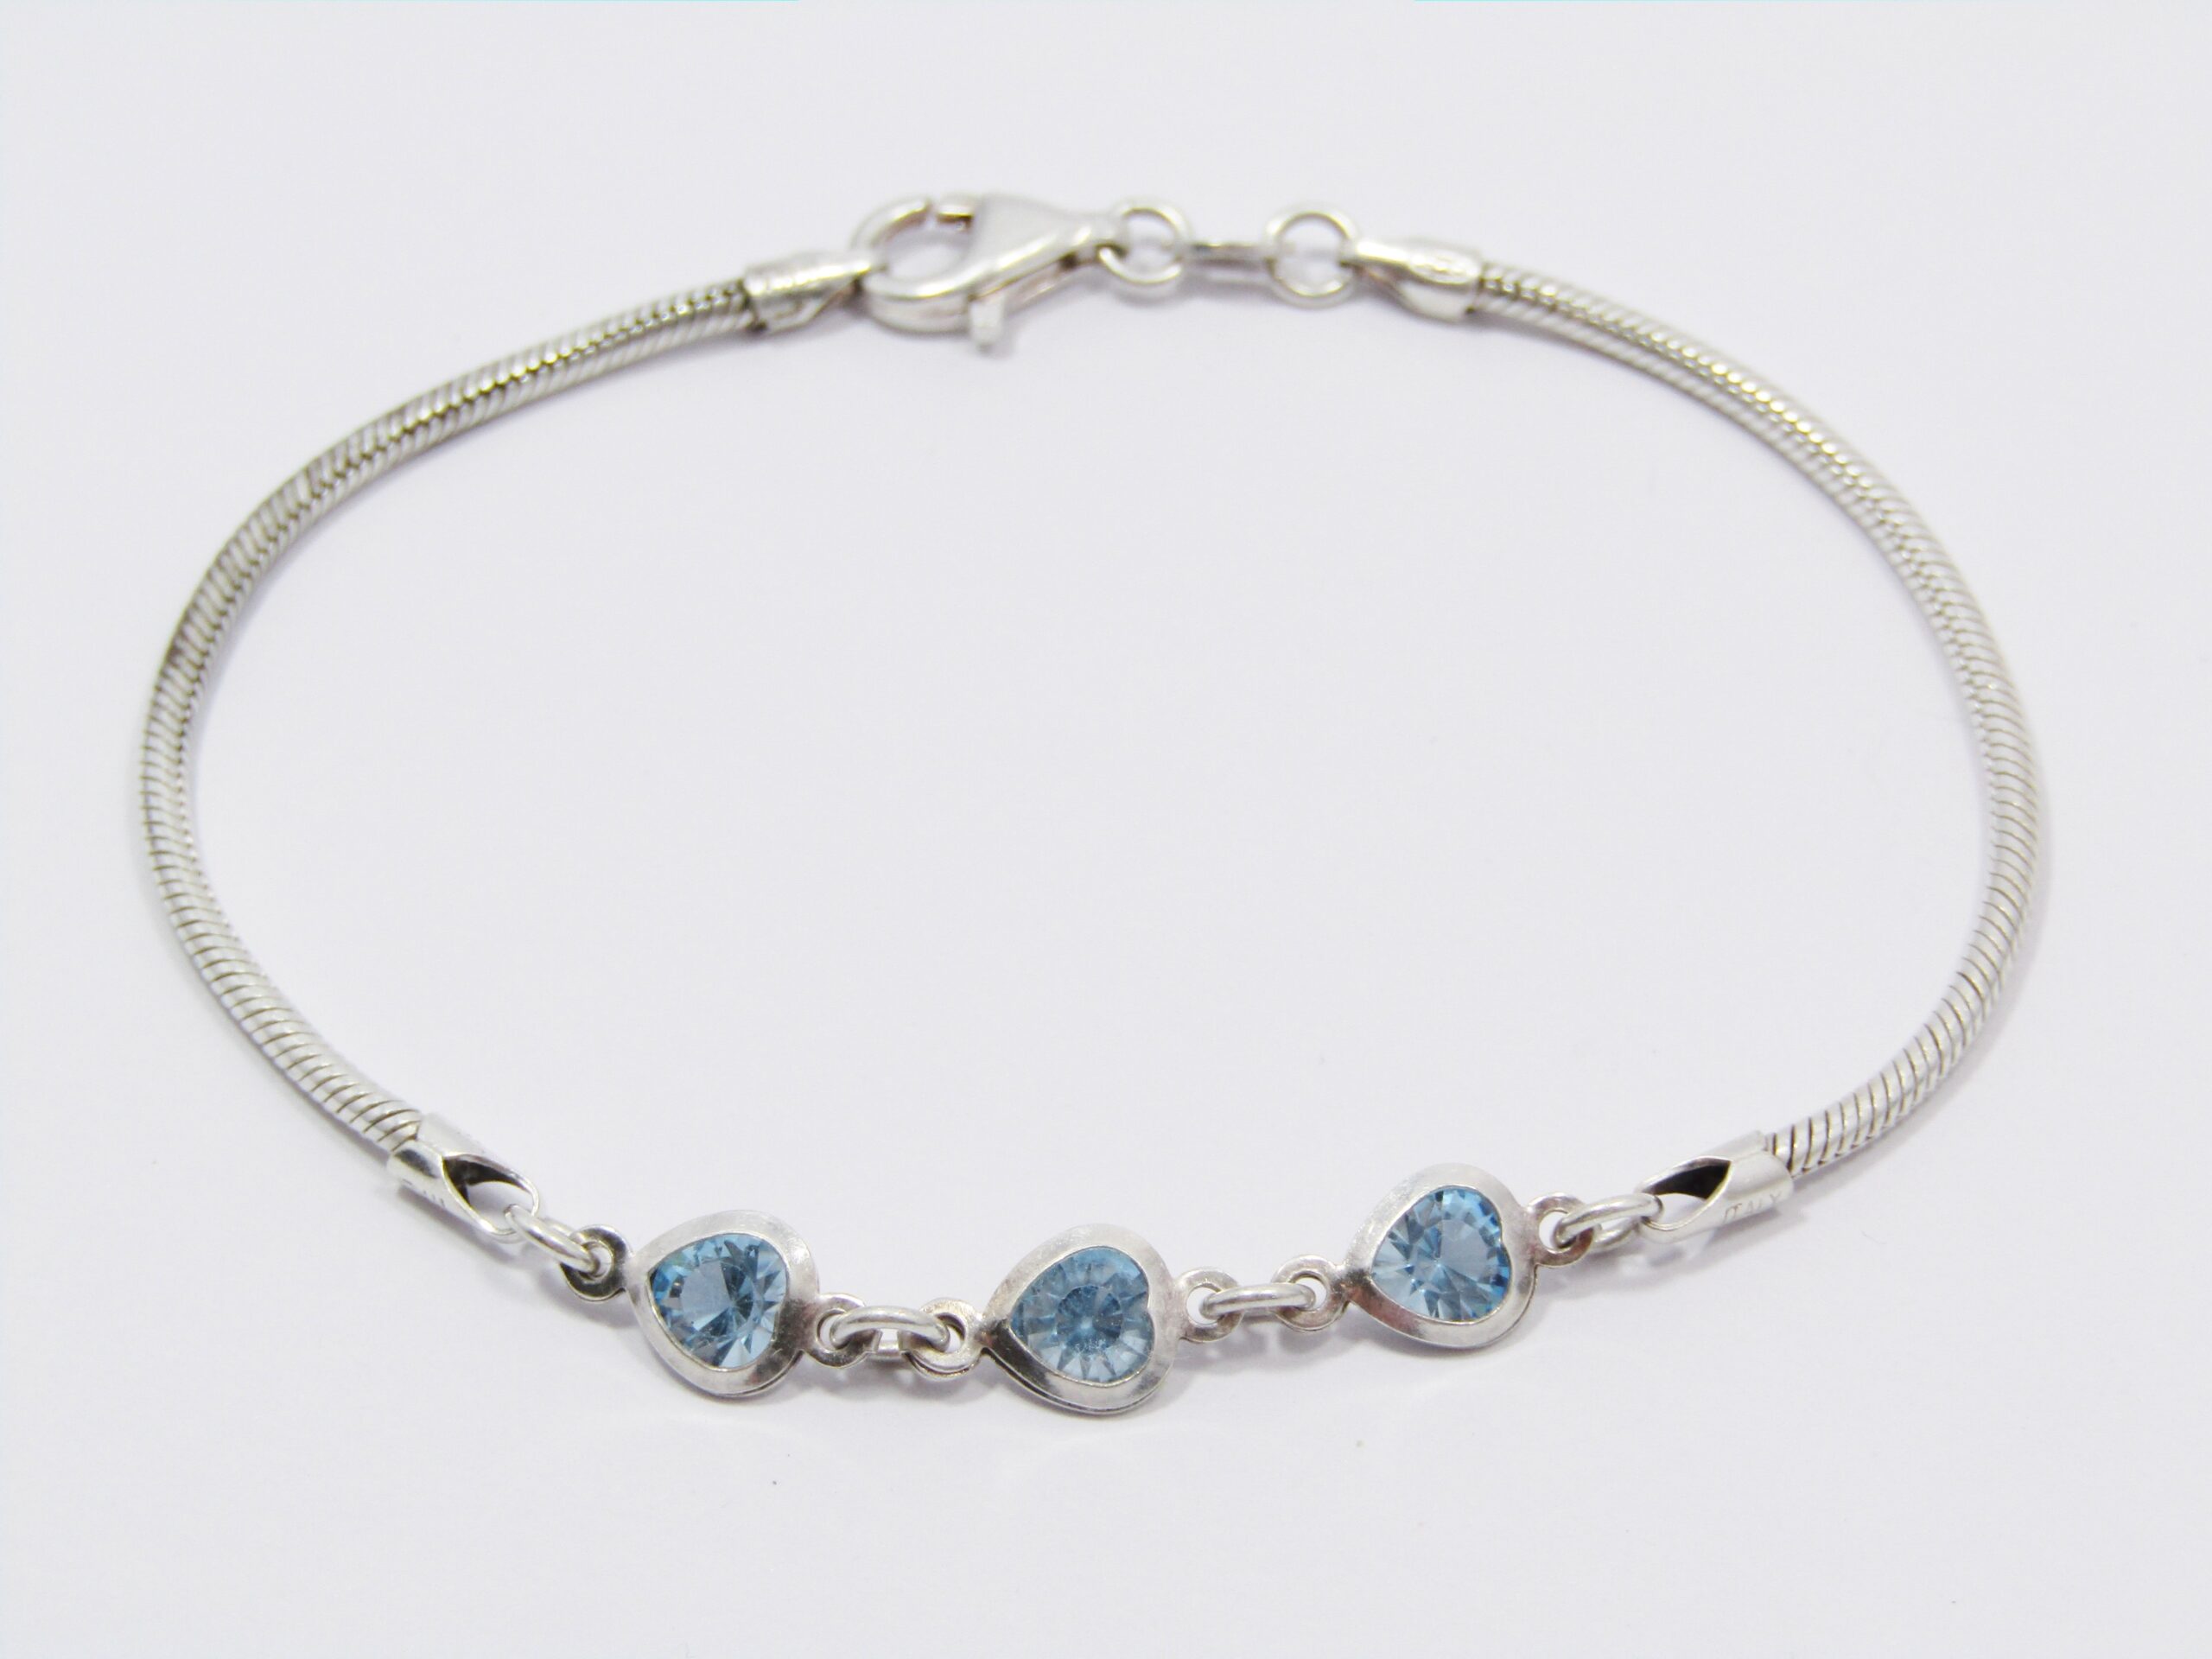 A Lovely Blue Heart Design Zirconia Bracelet in Sterling Silver.